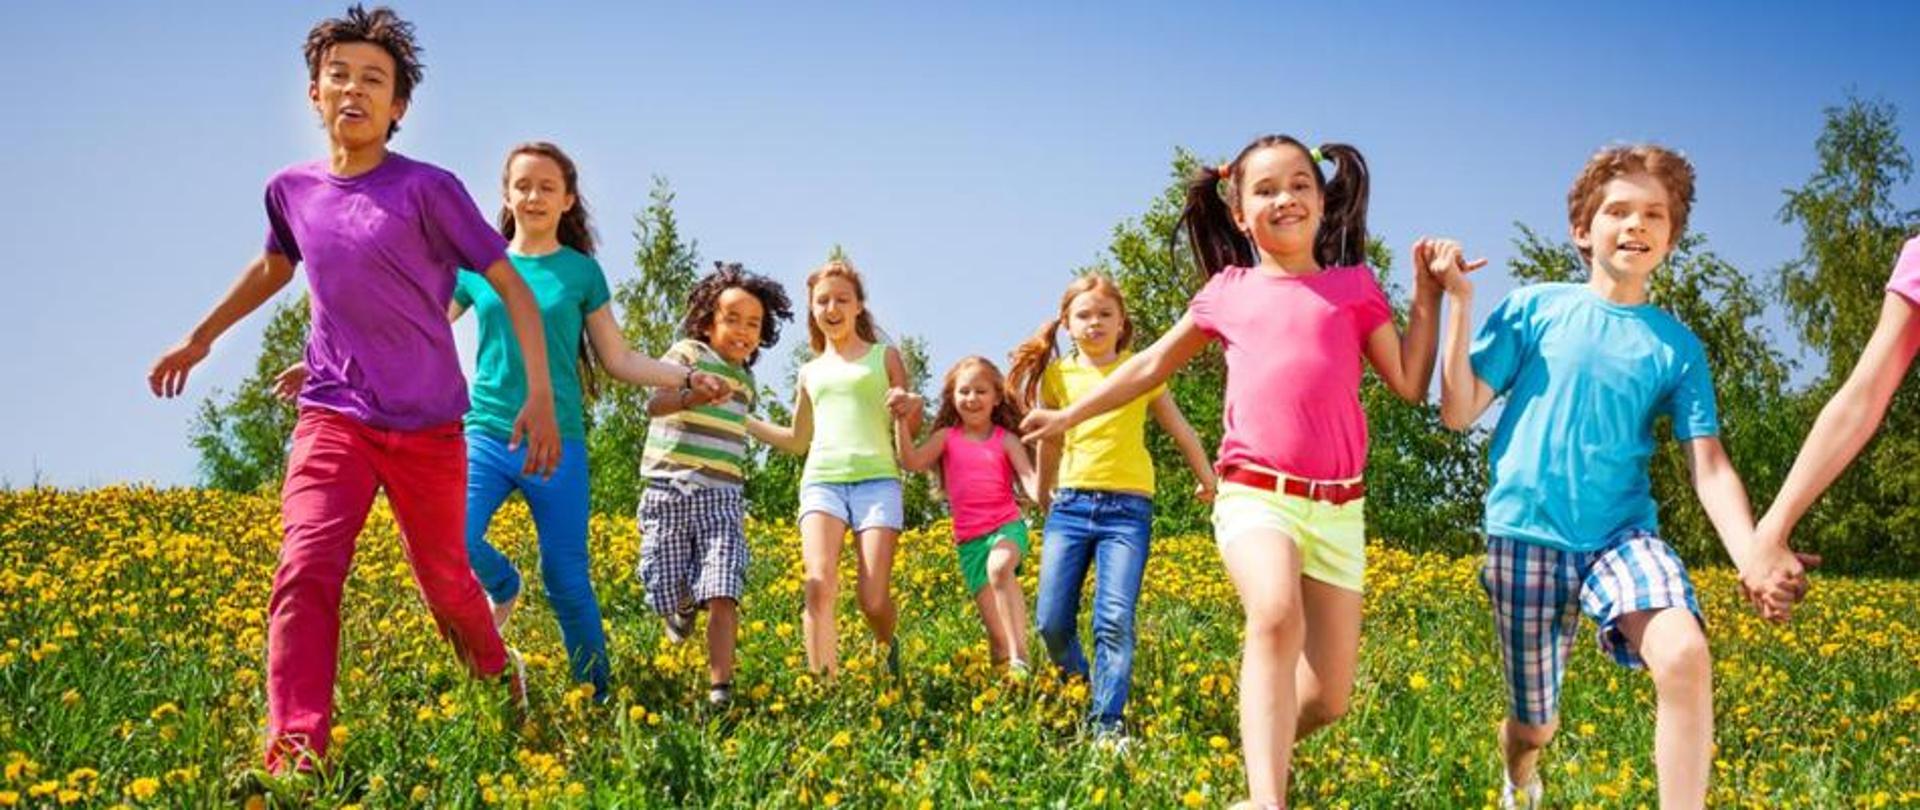 łąka po której biegną dzieci dziewczynki i chłopcy w kolorowych letnich strojach